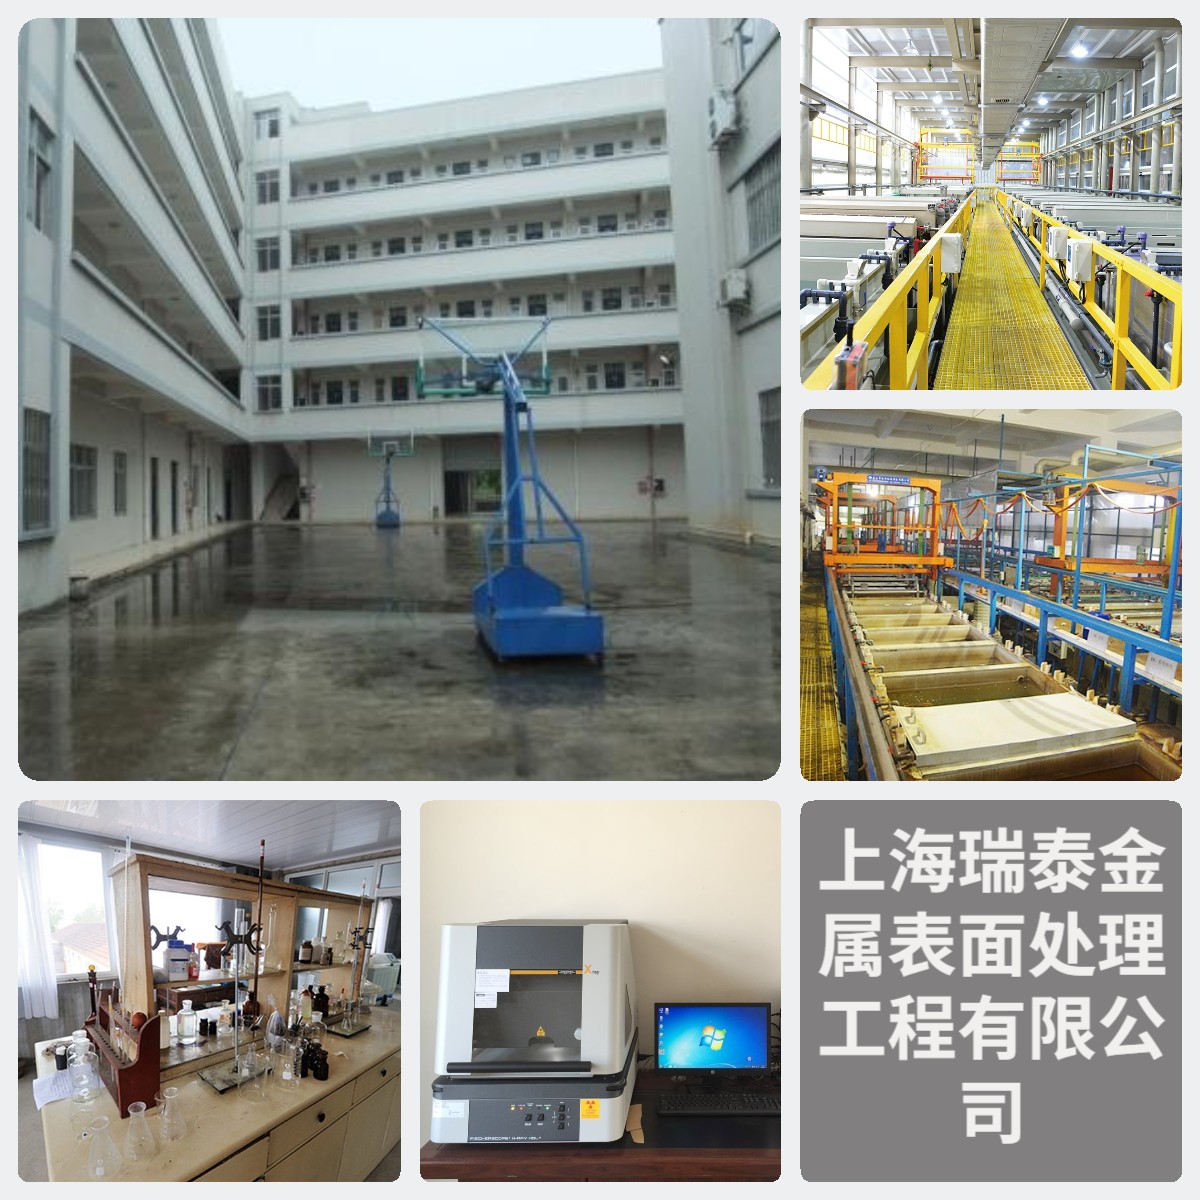 上海瑞泰金属表面处理工程有限公司